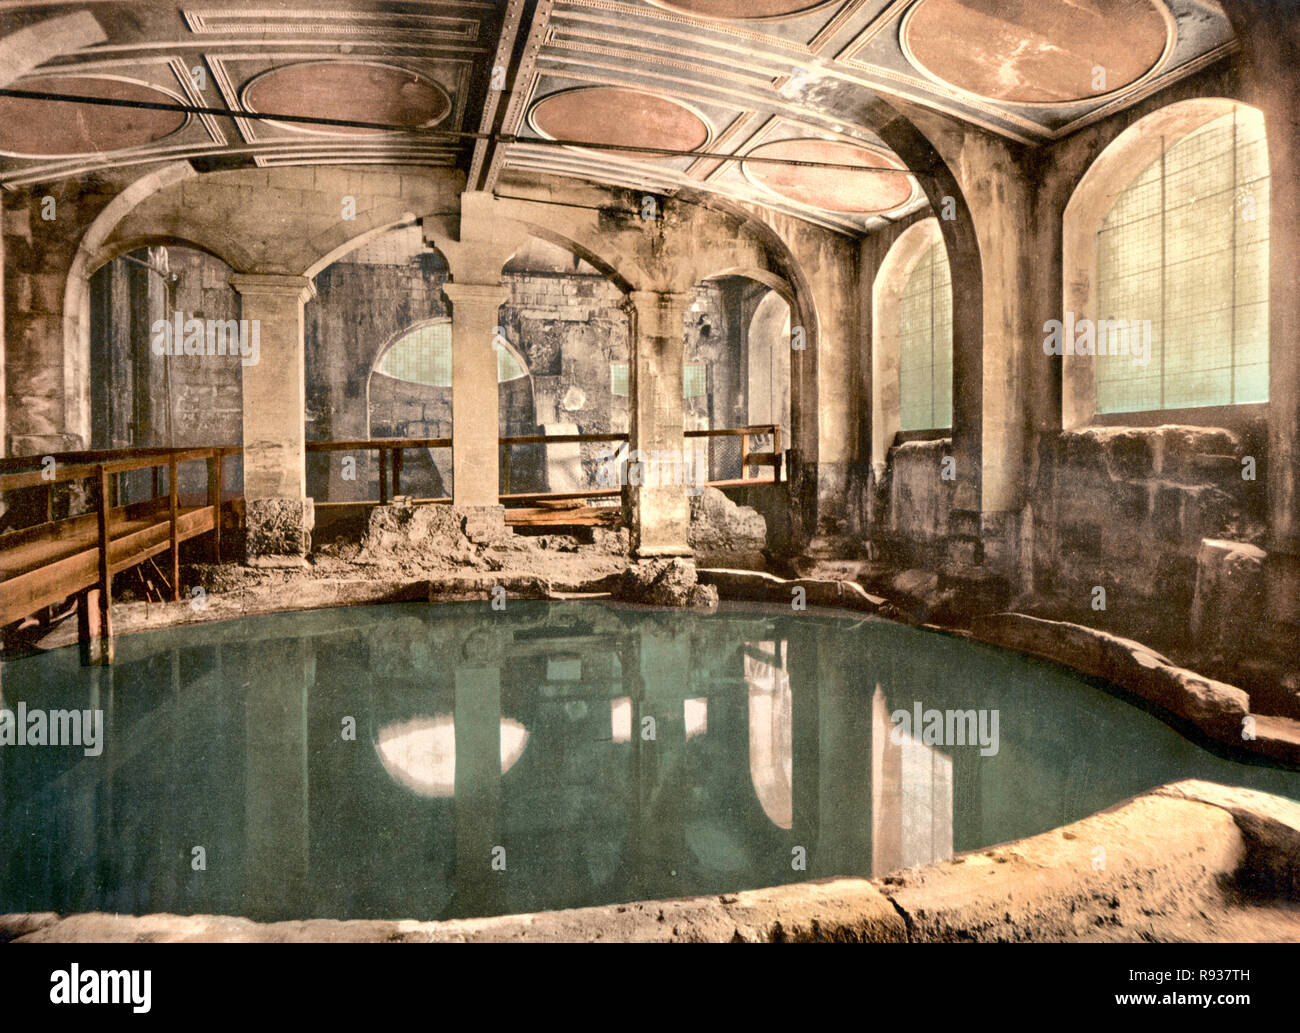 Les bains romains et l'abbaye, baignoire circulaire, Bath, Angleterre, vers 1900 Banque D'Images